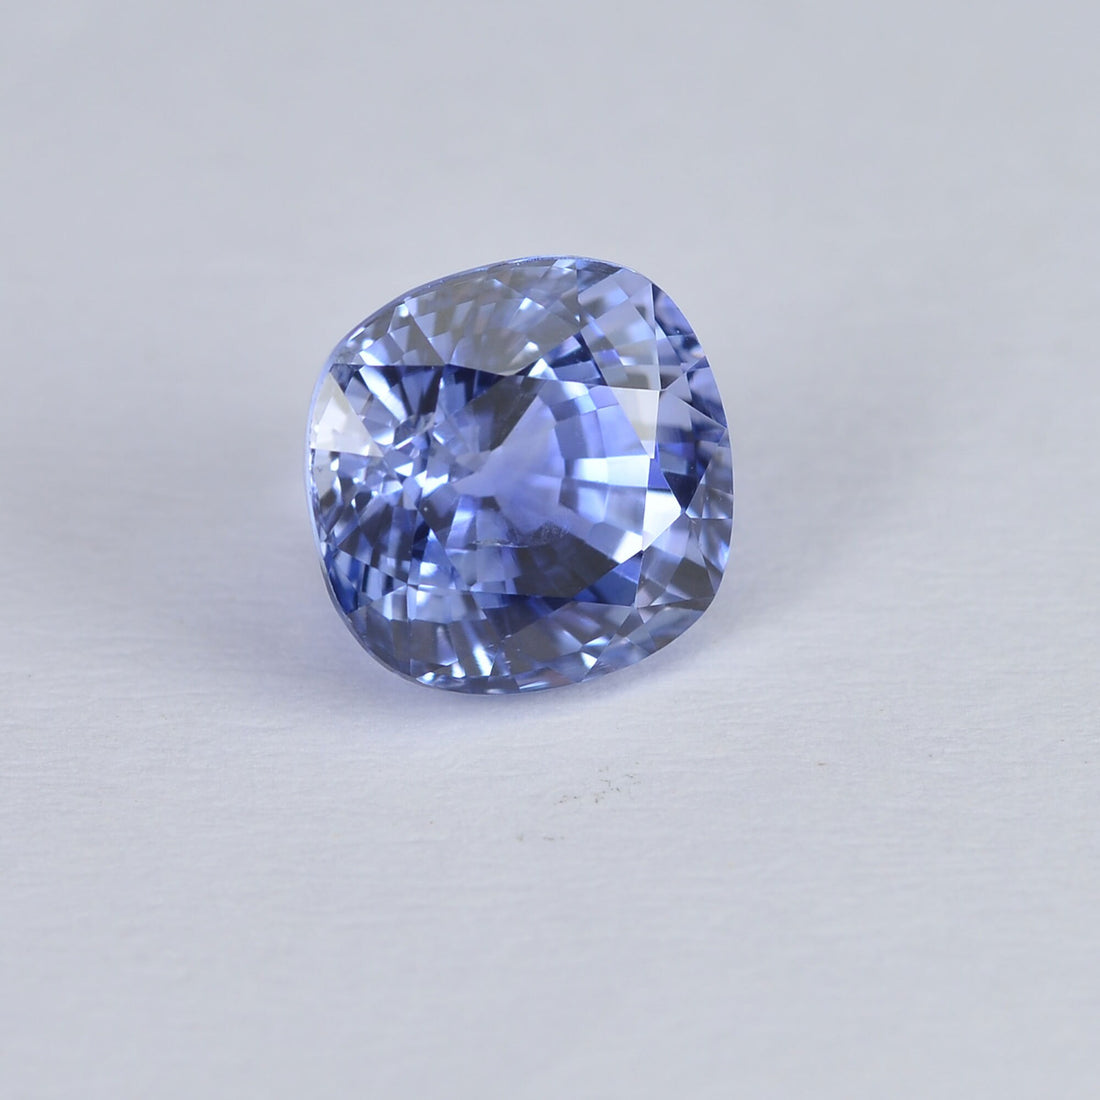 1.89 cts Natural Blue Sapphire Loose Gemstone Cushion Cut